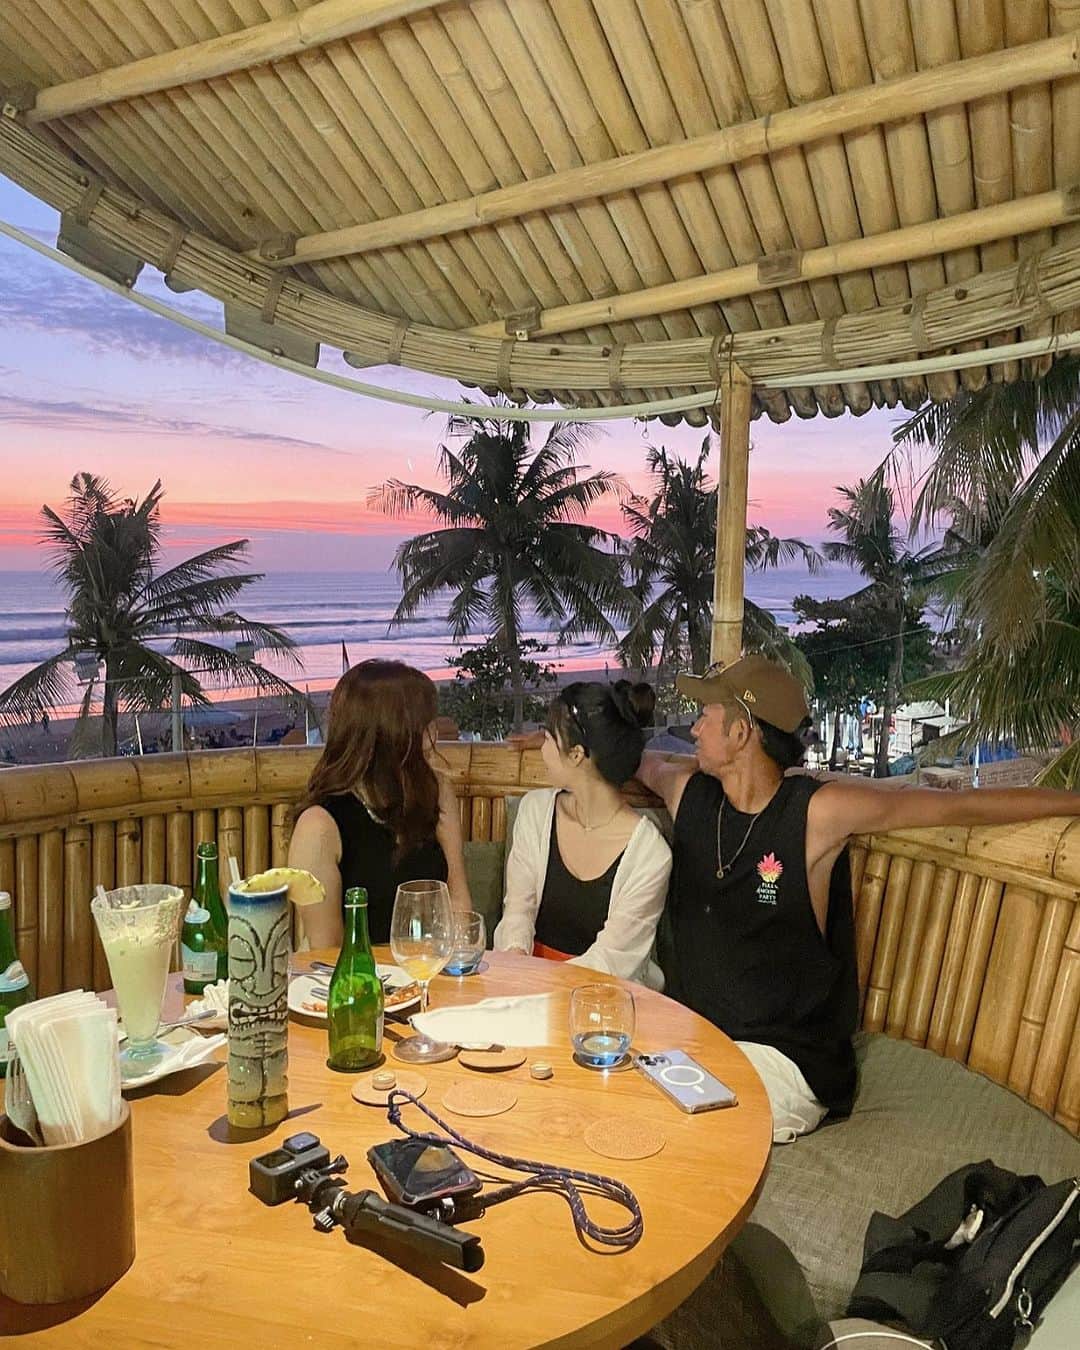 MEGのインスタグラム：「🌤️Azul beach club in Bali  ビーチサイドにあるプライベートダイニングテラスを備えた竹のツリーハウス。  夕暮れを眺めながら食事できるのが夢みたいだった。 バリでお世話になった @rudikuta が1番良い席をと案内してくれた🙏🏻🏝️  パイナップルのったピザが美味しい！🍍 Candy landという飲み物を頼んだけど、想像以上に大きすぎてびっくり、みんなでシェア😂🥂  本当に素敵な時間、人も多くなく思ってたよりゆっくりできた😌  Open / 7:00-23:00 入場料：なし 予約して行くのがおすすめ ピザ、パスタ飲み物それぞれ頼んで1人3000円〜  📍 Jl. Padma No.2, Legian, Kec. Kuta, Kabupaten Badung, Bali 80361 indonesia   #baliindonesia #azulbeachclub #bali_megvlog  #travelphotography  #travel #visitbali #kutabali    #バリ島 #バリ旅行 #バリ島観光」